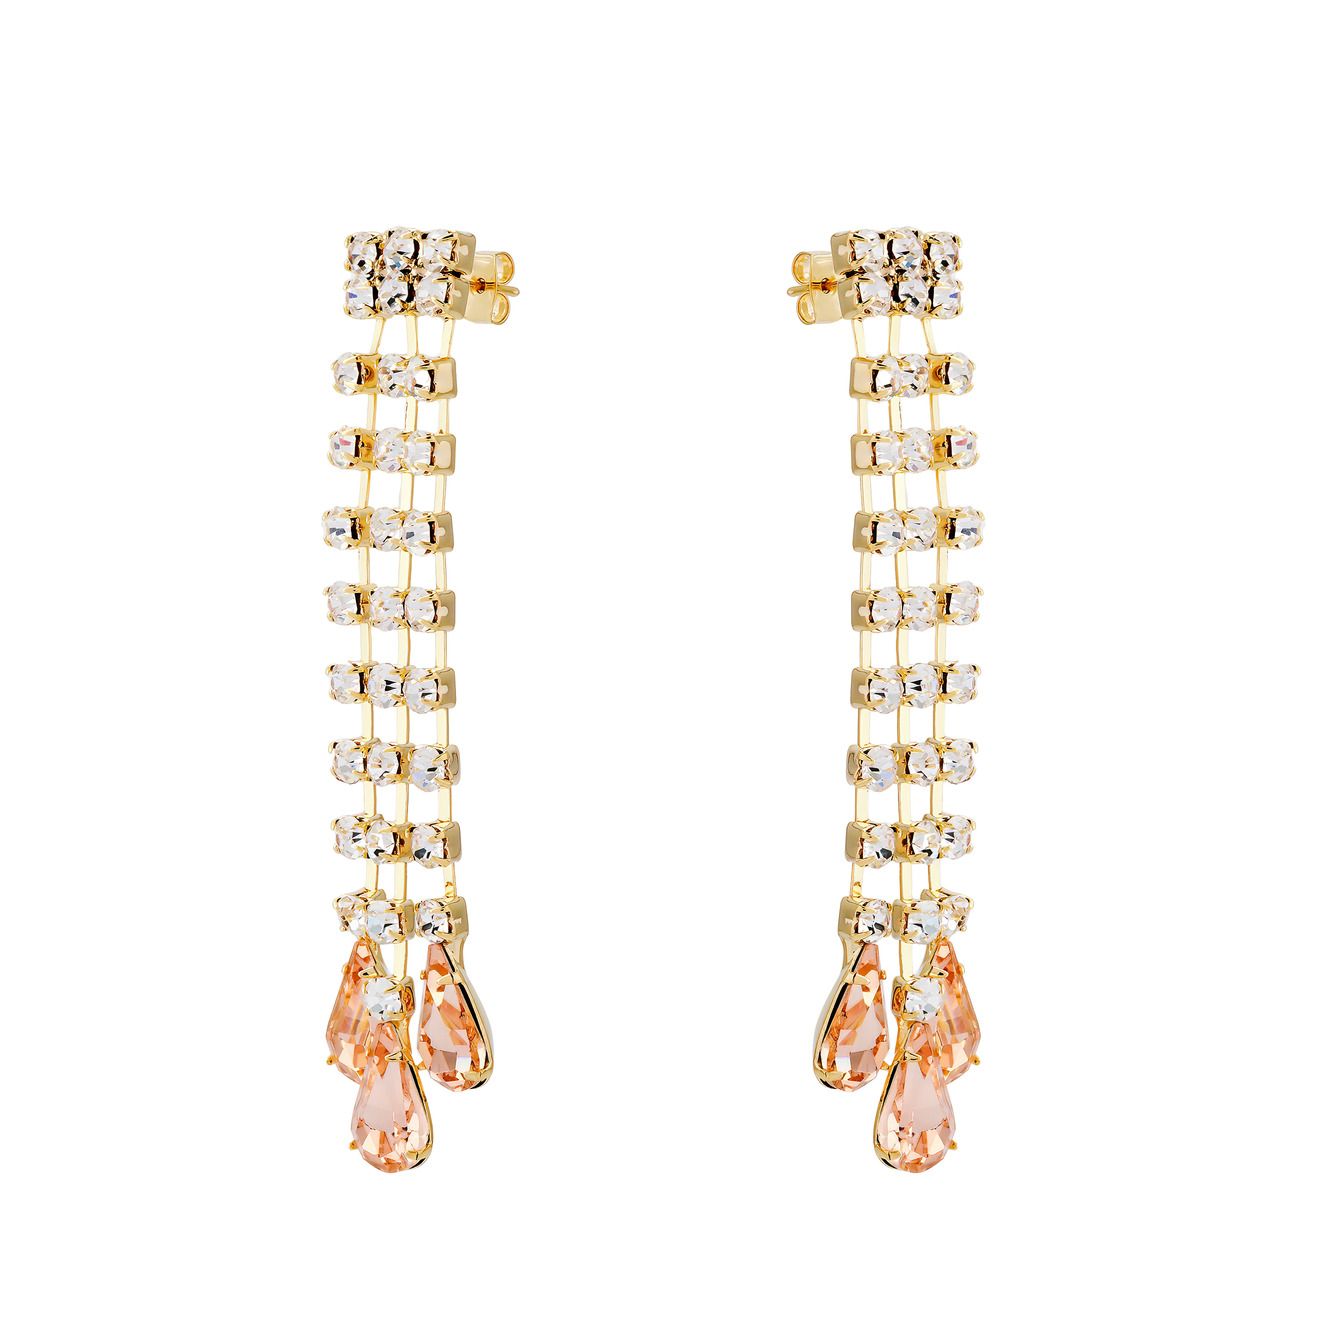 Herald Percy Золотистые серьги-дождики с дорожками из кристаллов и розовыми каплями herald percy серебристые серьги с дорожками кристаллов